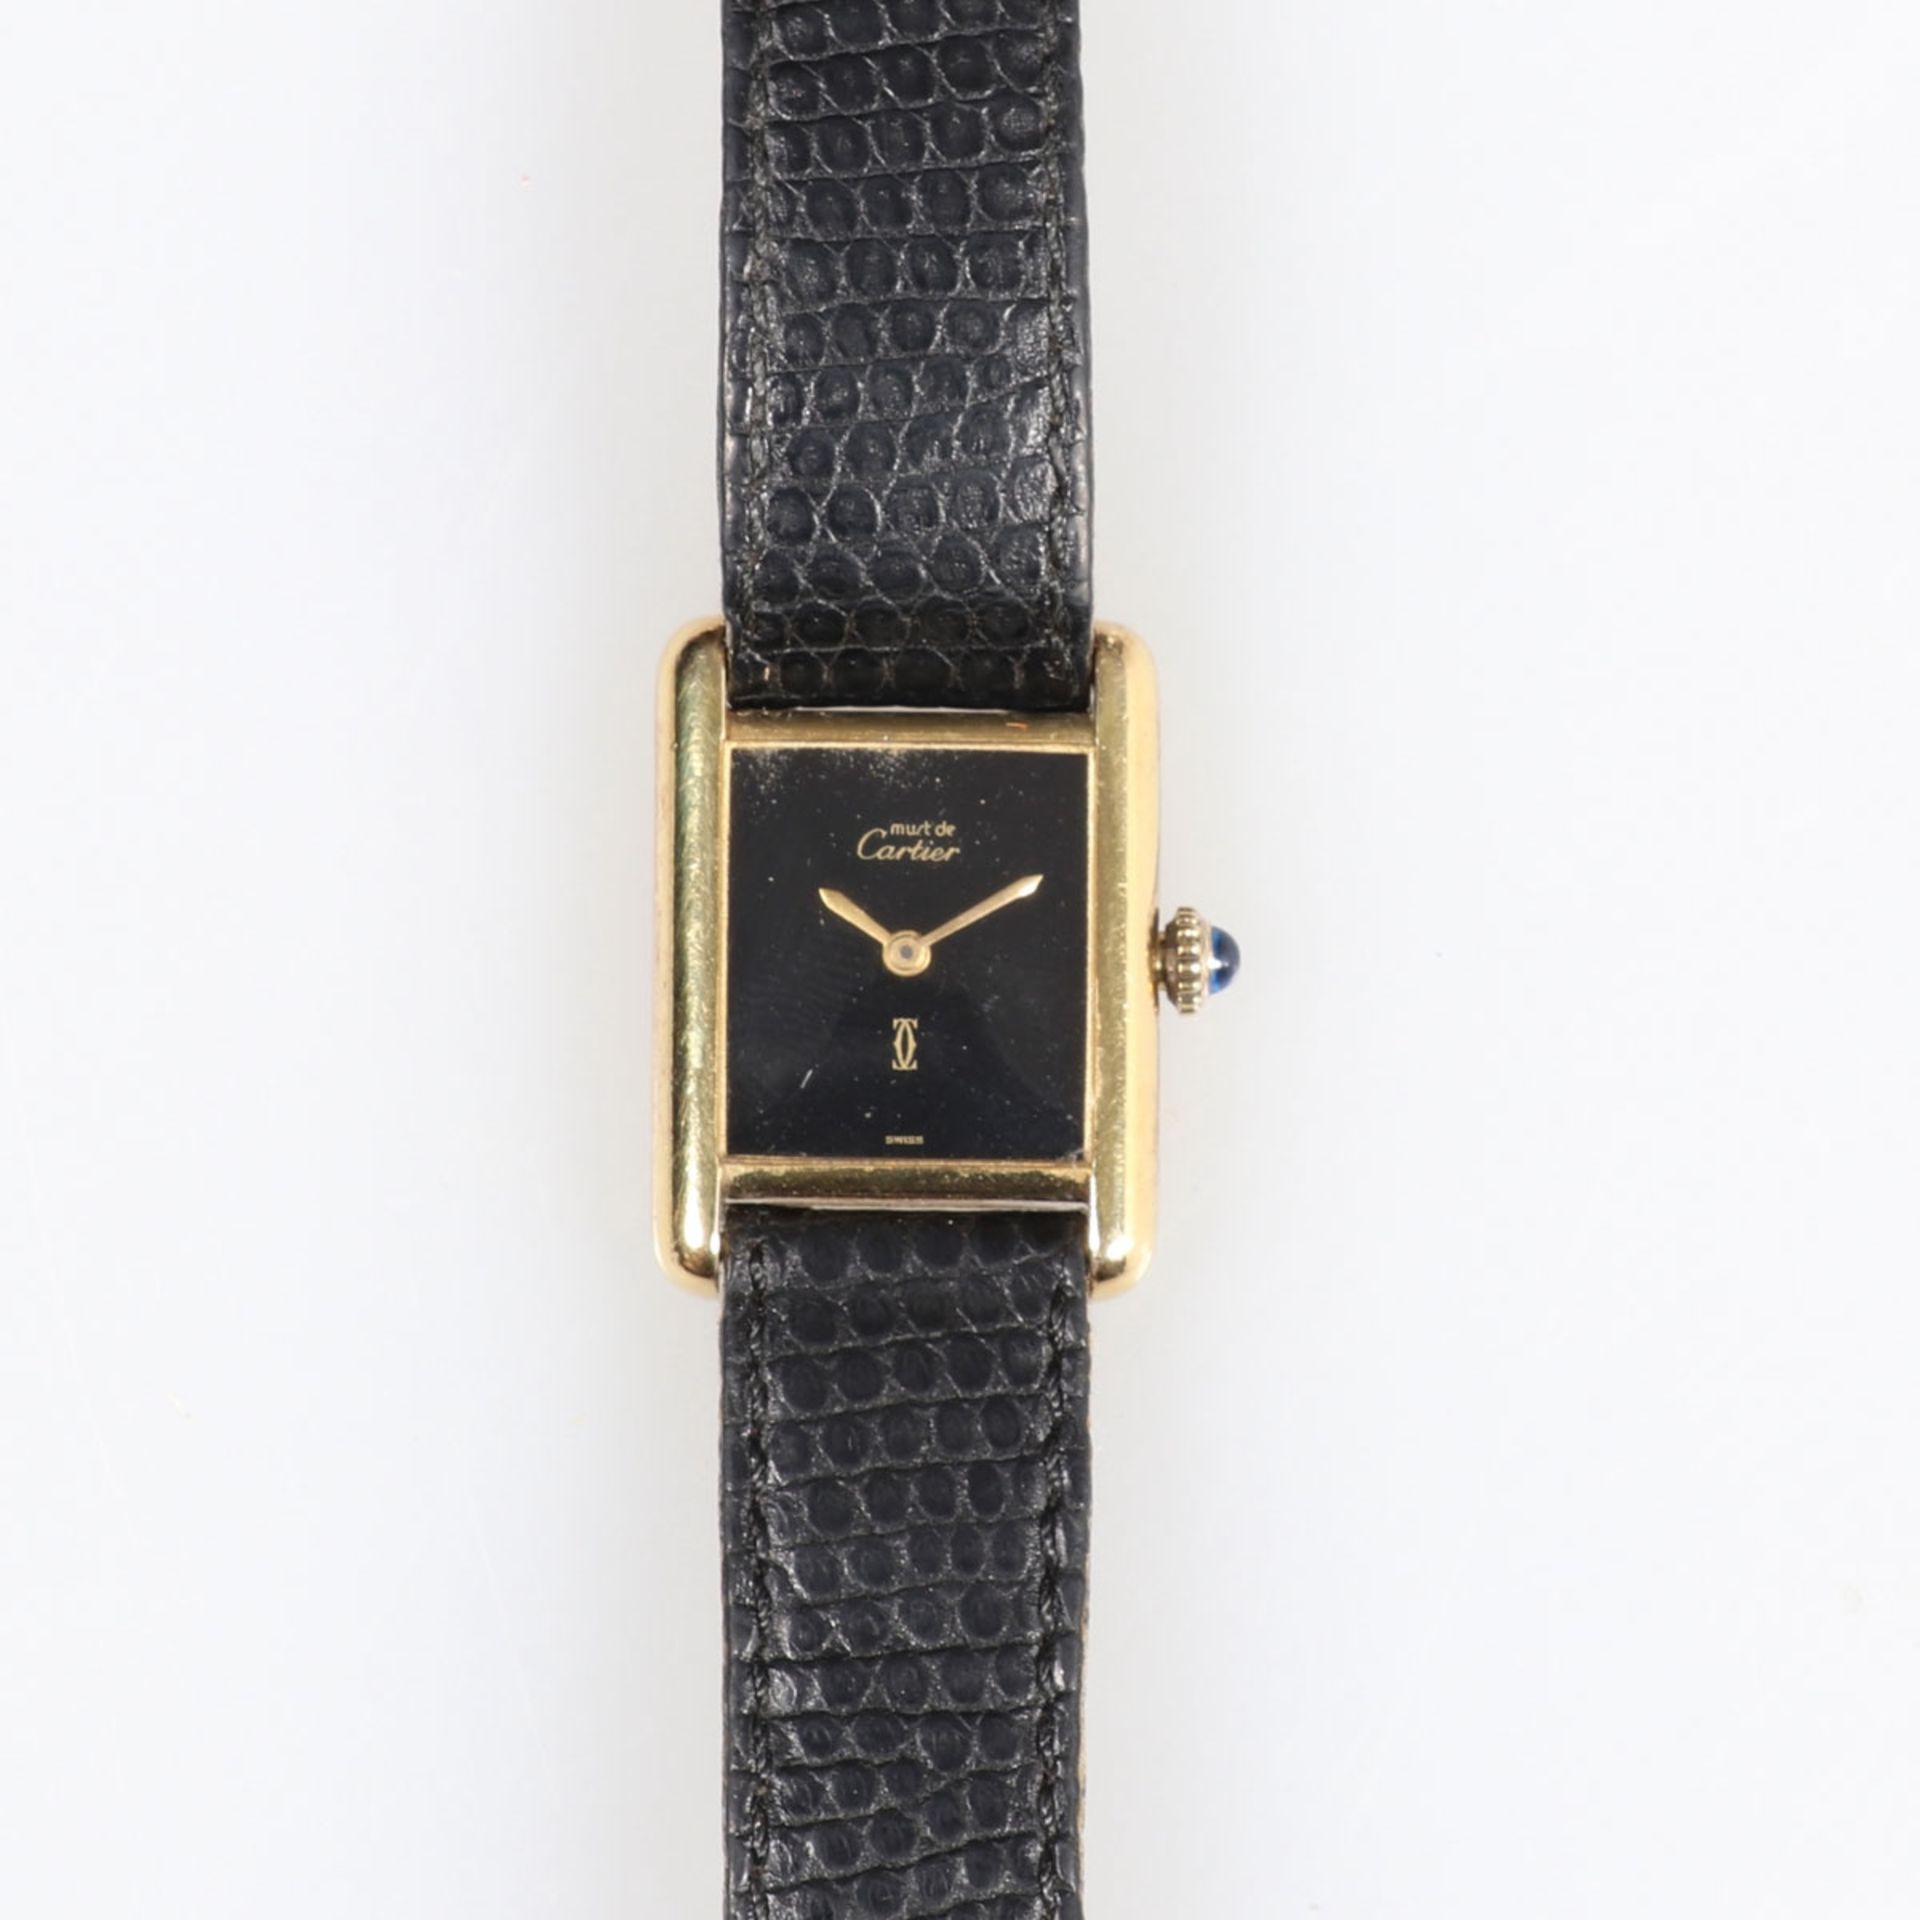 Cartier - Armbanduhr mit Lederband - Image 2 of 2